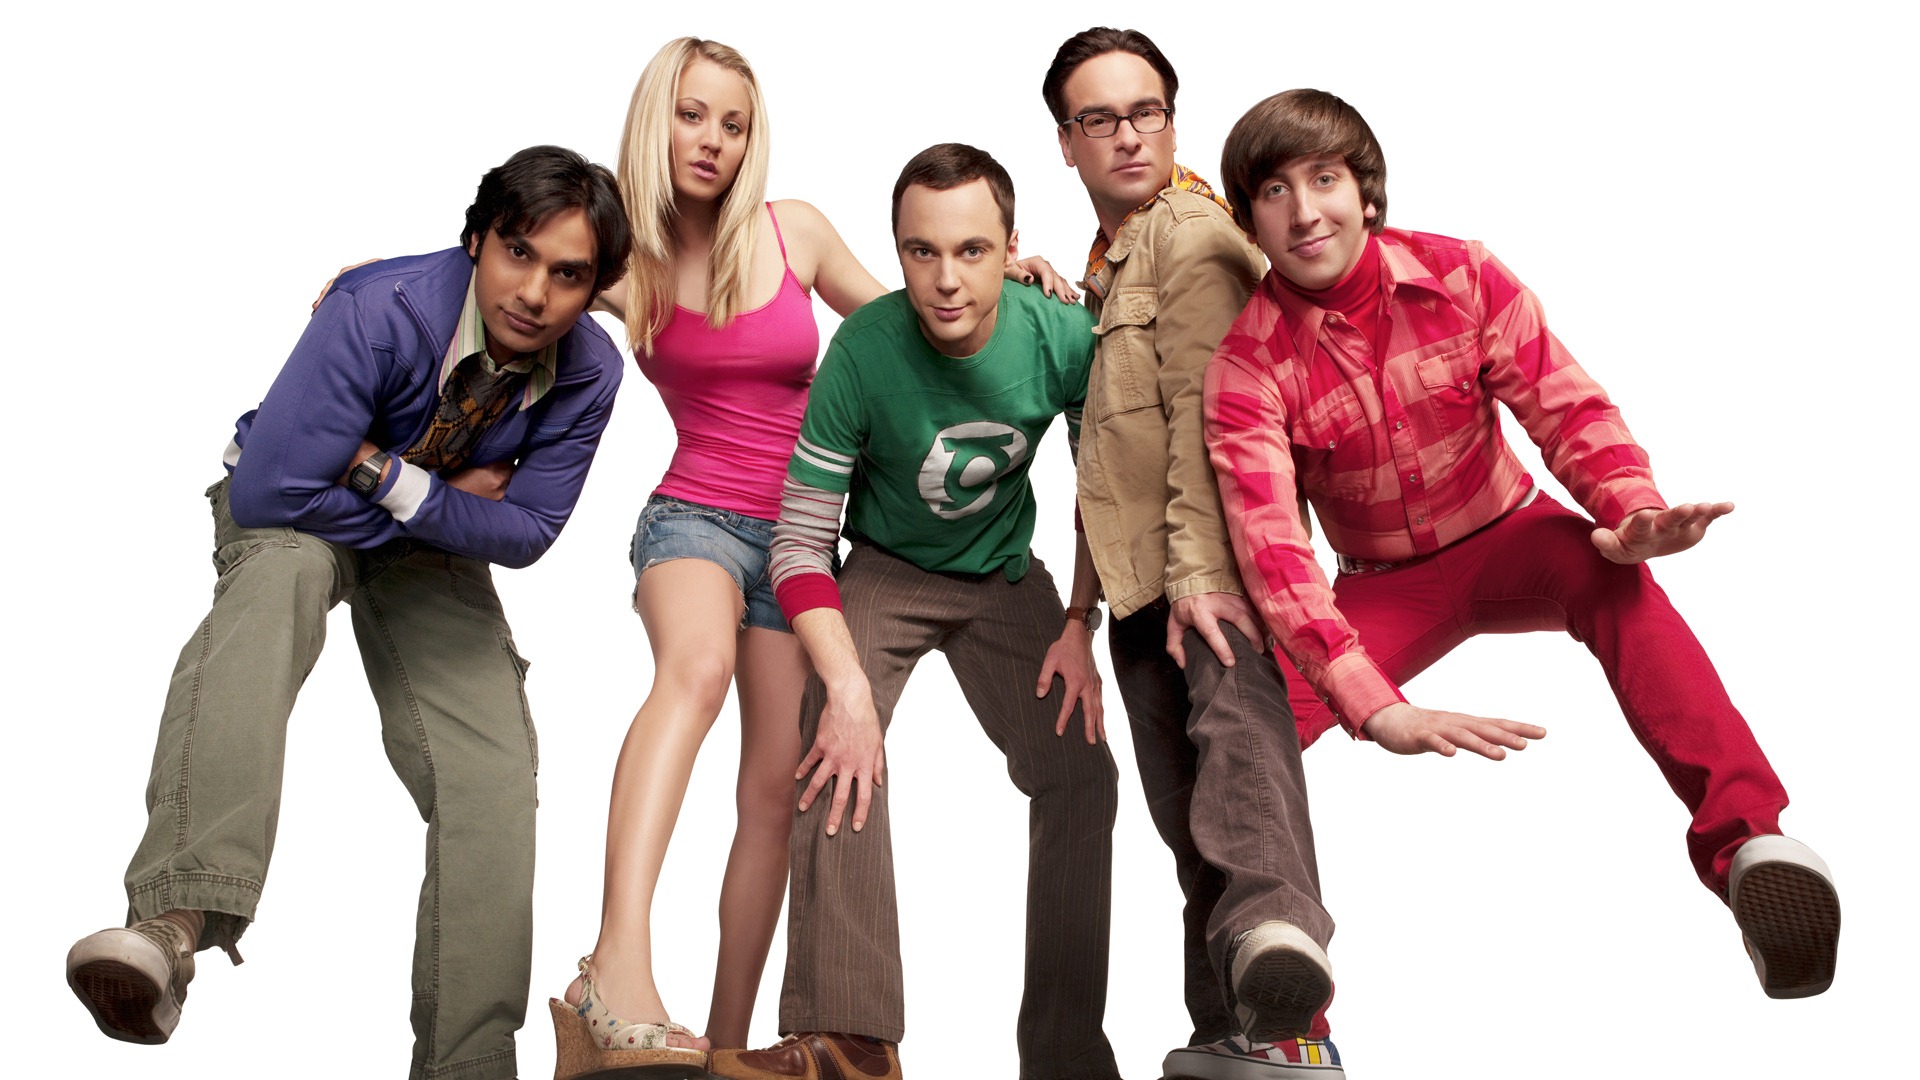 The Big Bang Theory 生活大爆炸 电视剧高清壁纸25 - 1920x1080